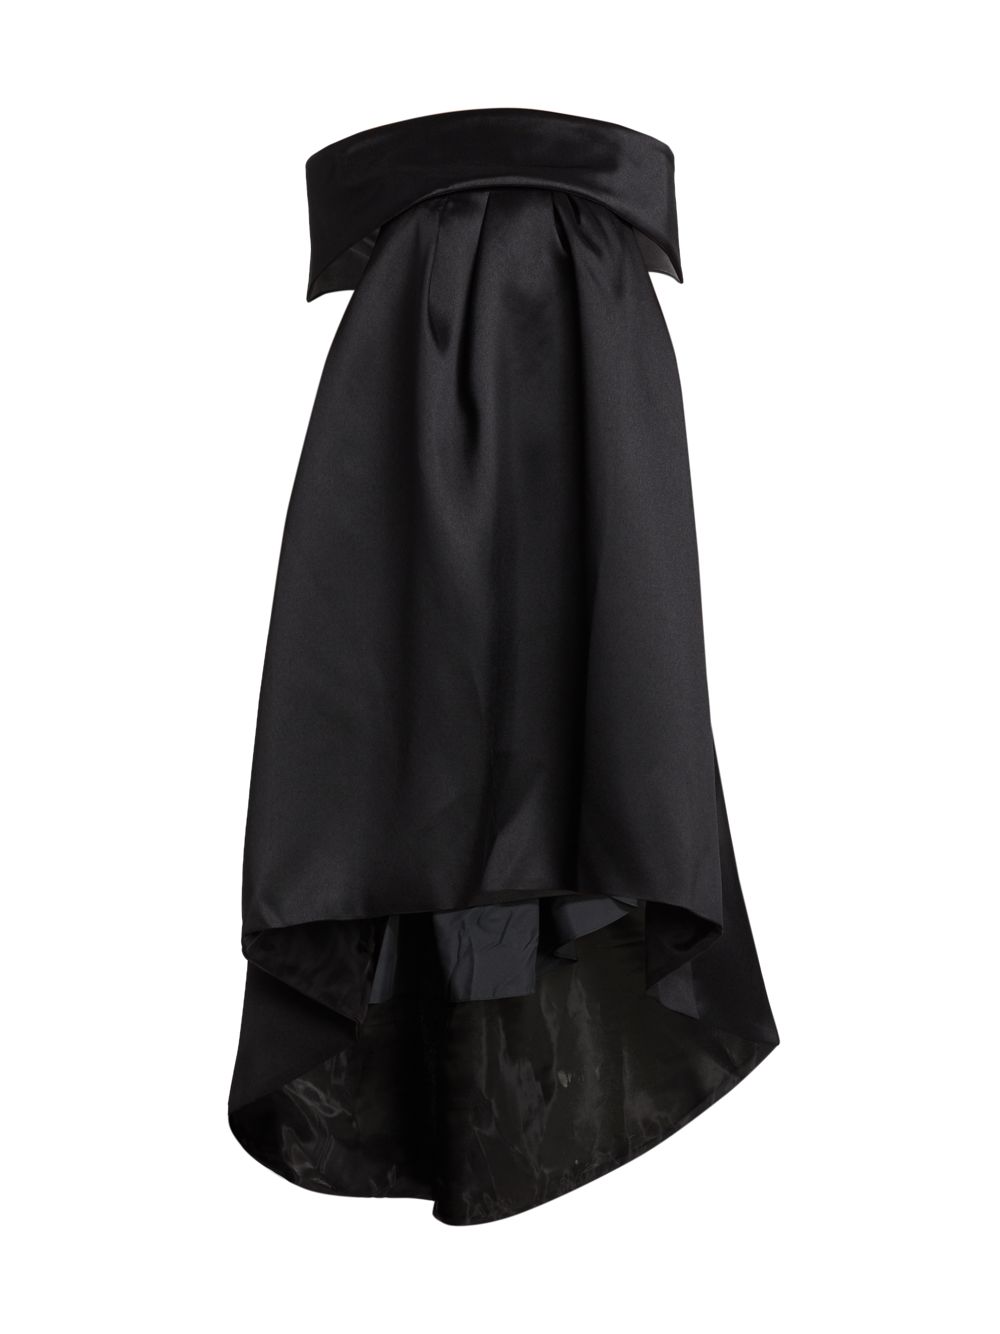 Платье-трапеция с бантом на спине Amsale, черный baon платье с бантом на спине xxl бежевый